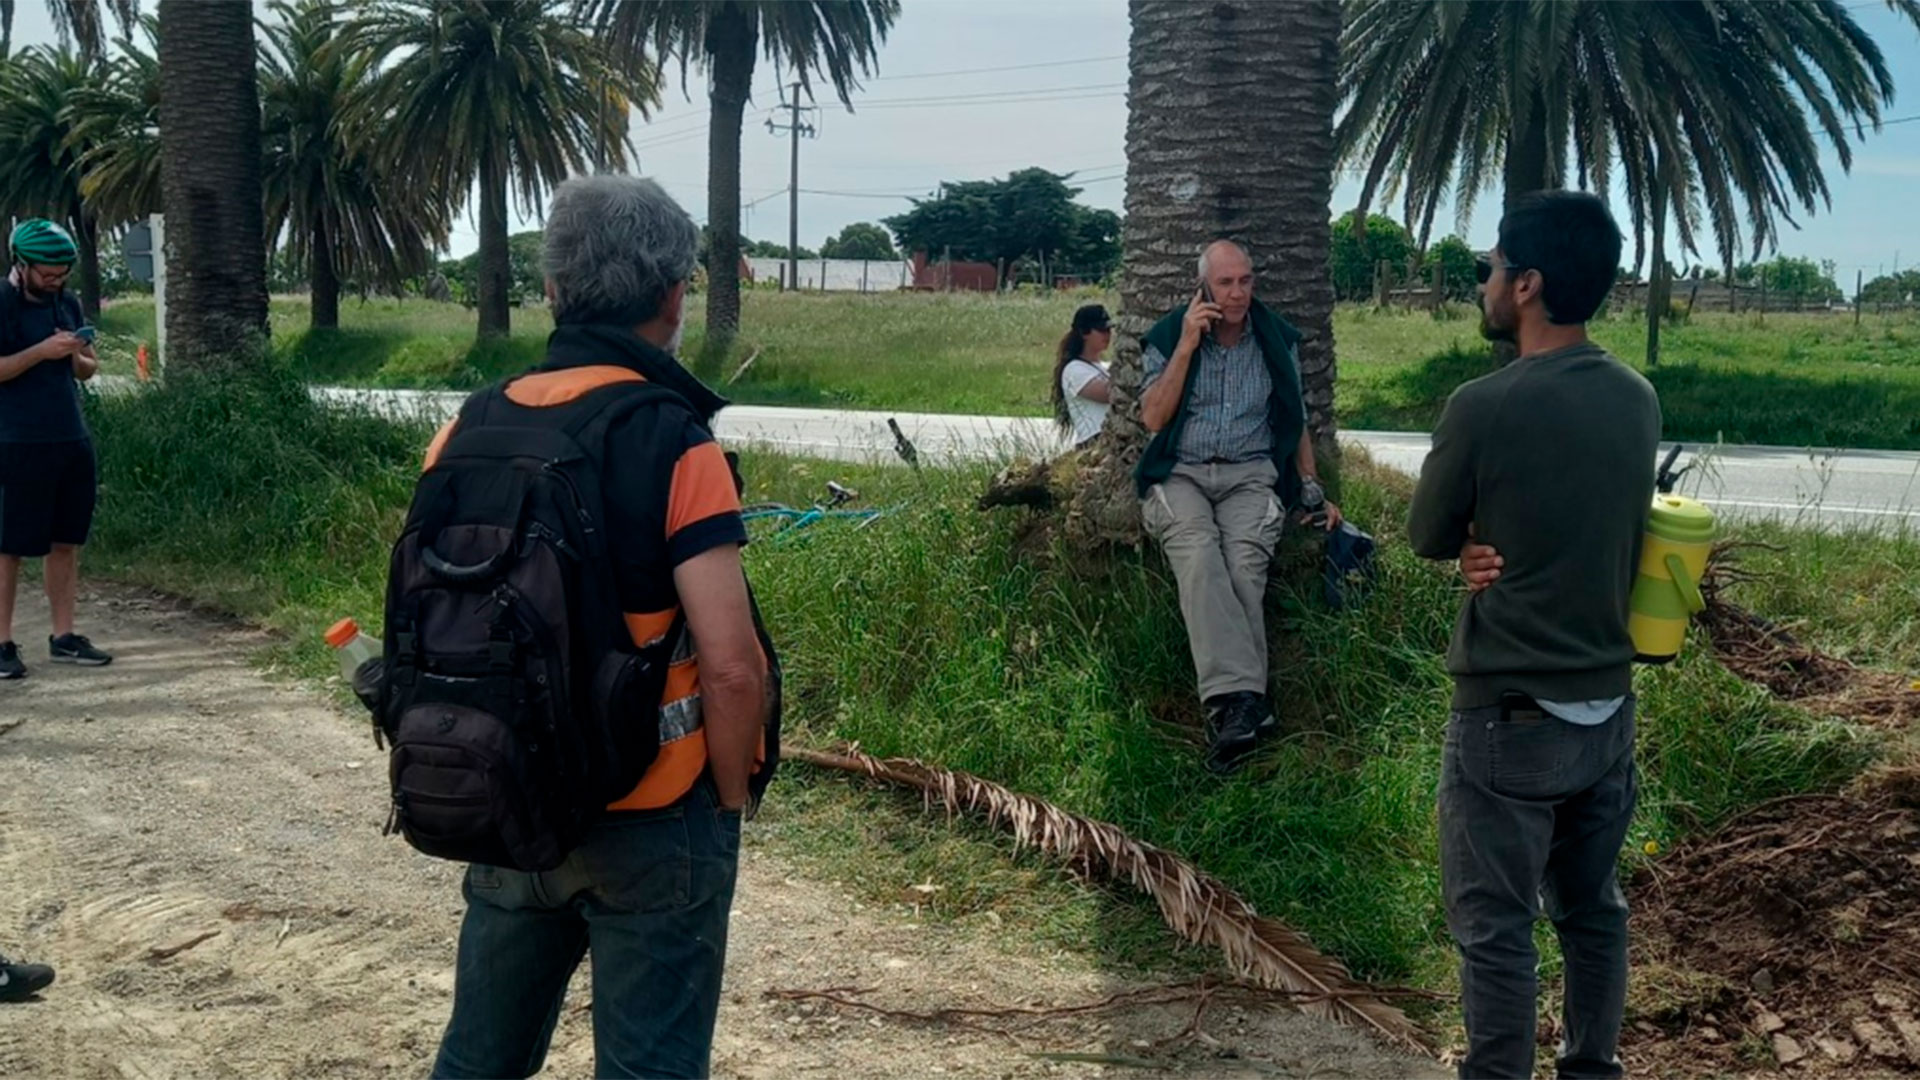 Vecinos se resisten al retiro de palmeras. Foto: La Colonia Digital